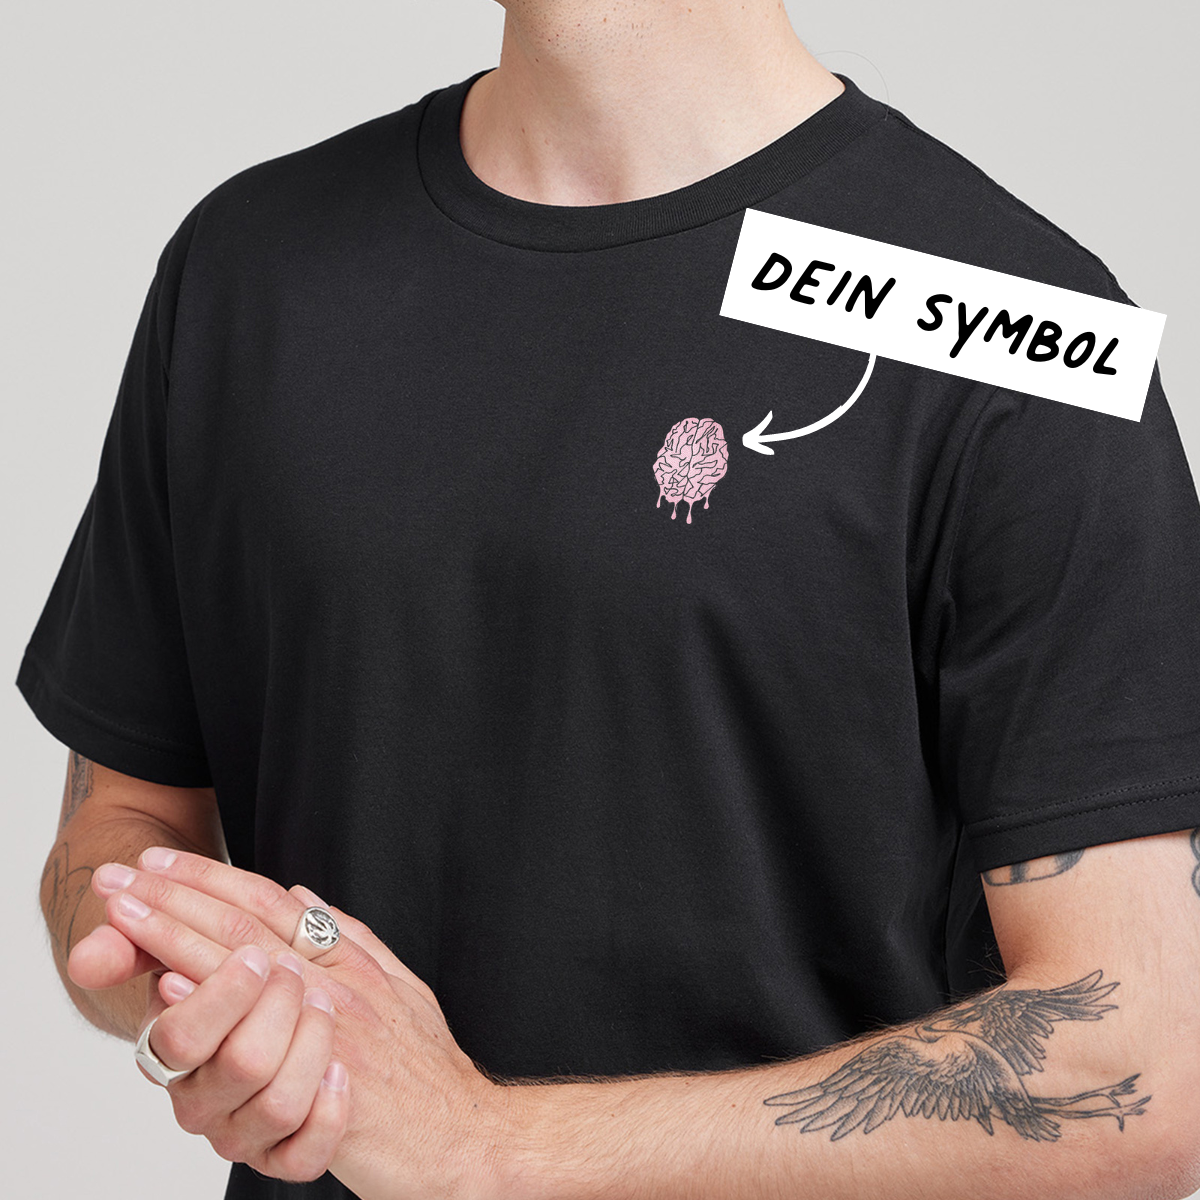 Männer - Besticktes T-shirt mit Personalisierung